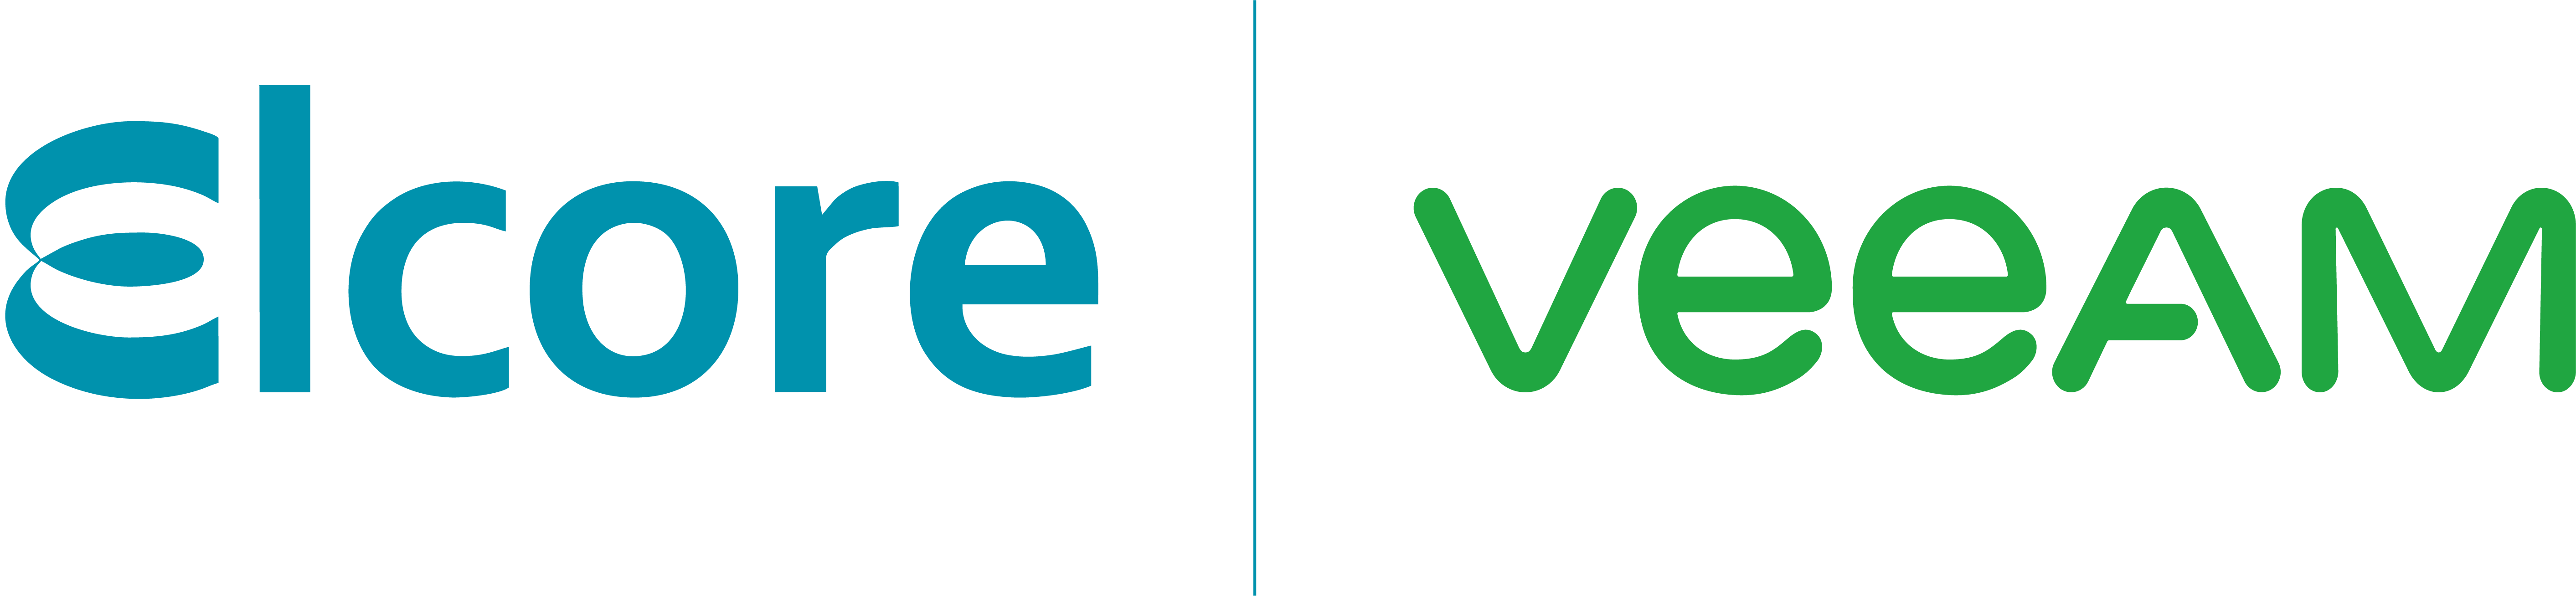 Специальные условия для клиентов Veeam от компании Elcore